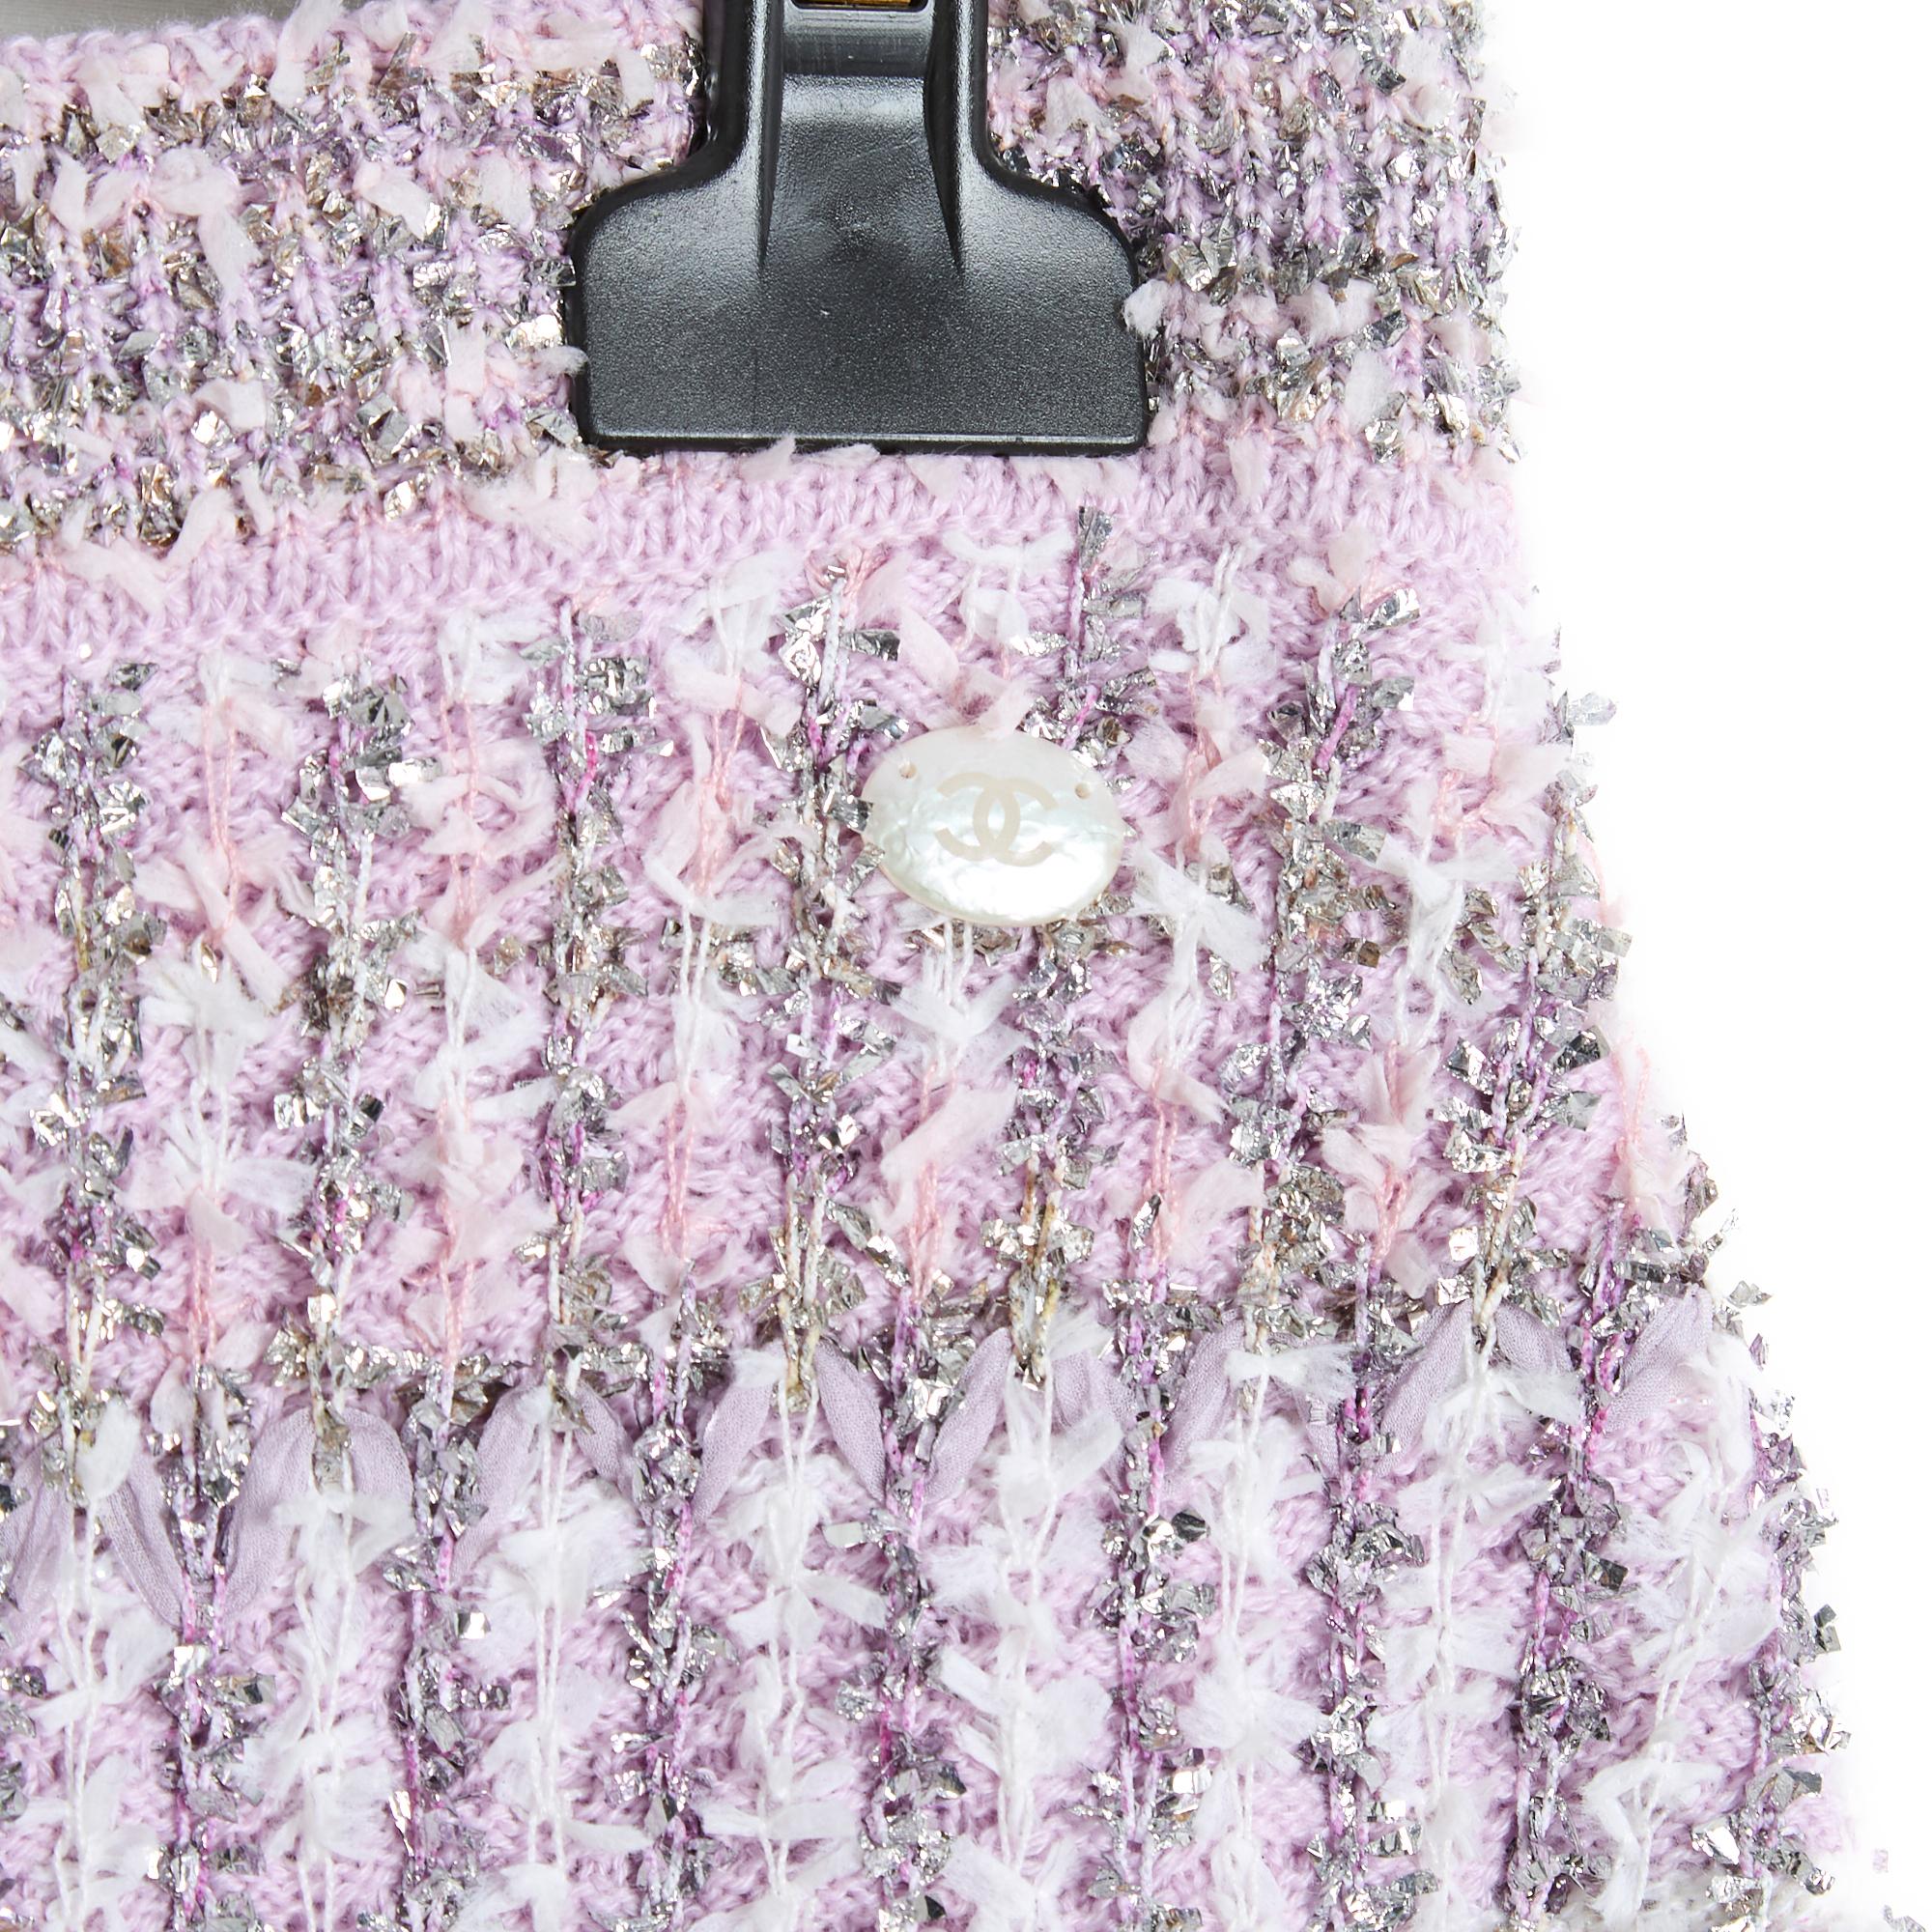 Jupe Chanel de la collection Cruise 2018 de Karl Lagerfeld en tweed de cachemire violet clair mélangé à des fils argentés et blancs, taille élastique fermée par un zip et un crochet, non doublée. Taille 40FR : taille (sans étirer la ceinture